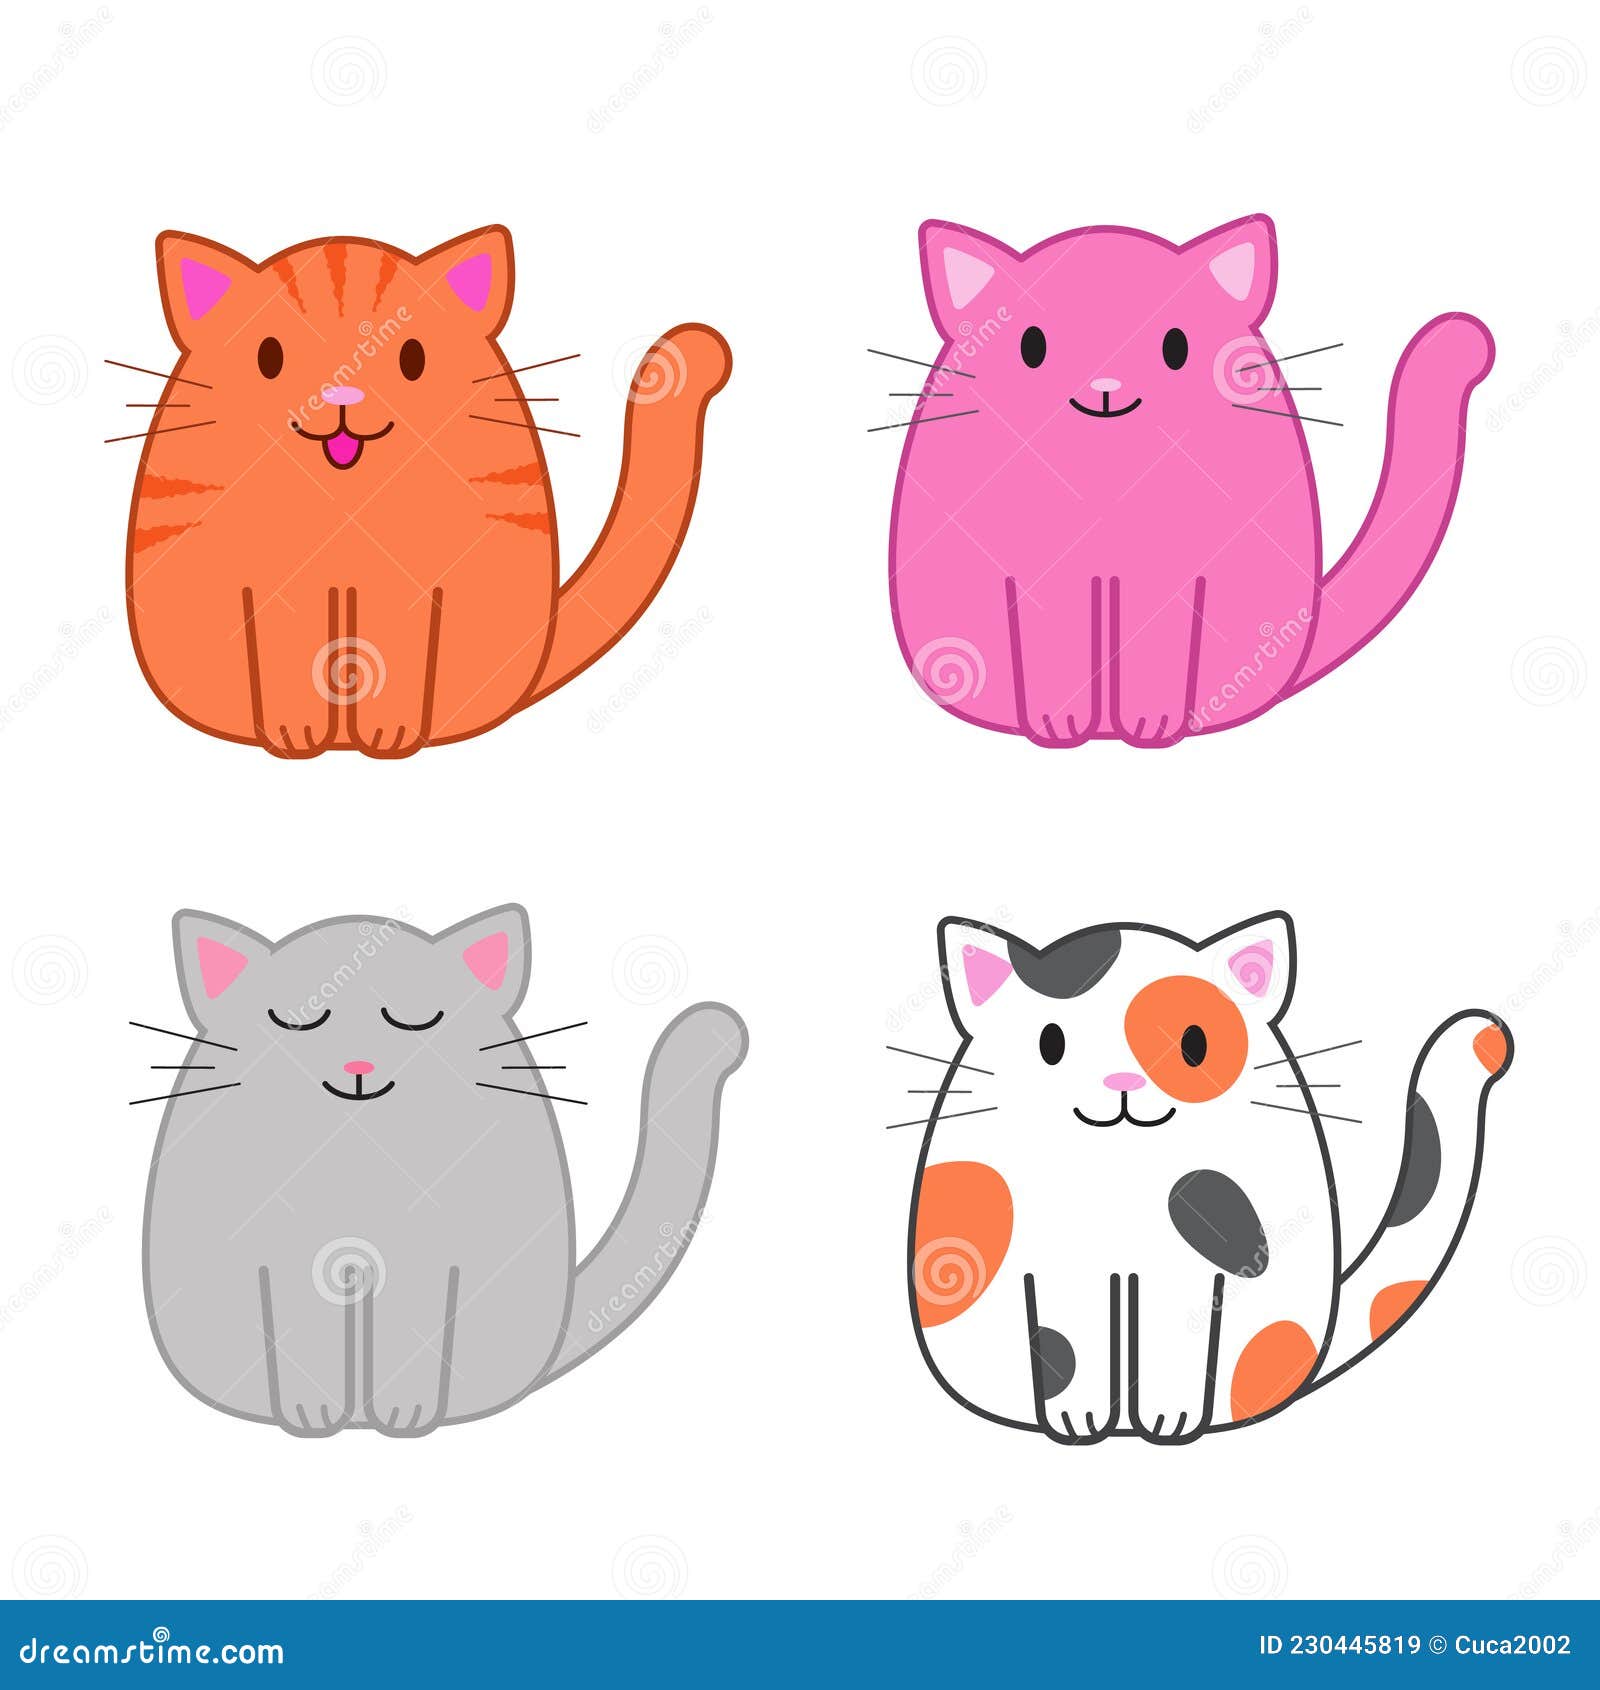 Premium Vector  Cute cat funny cartoon icon illustration